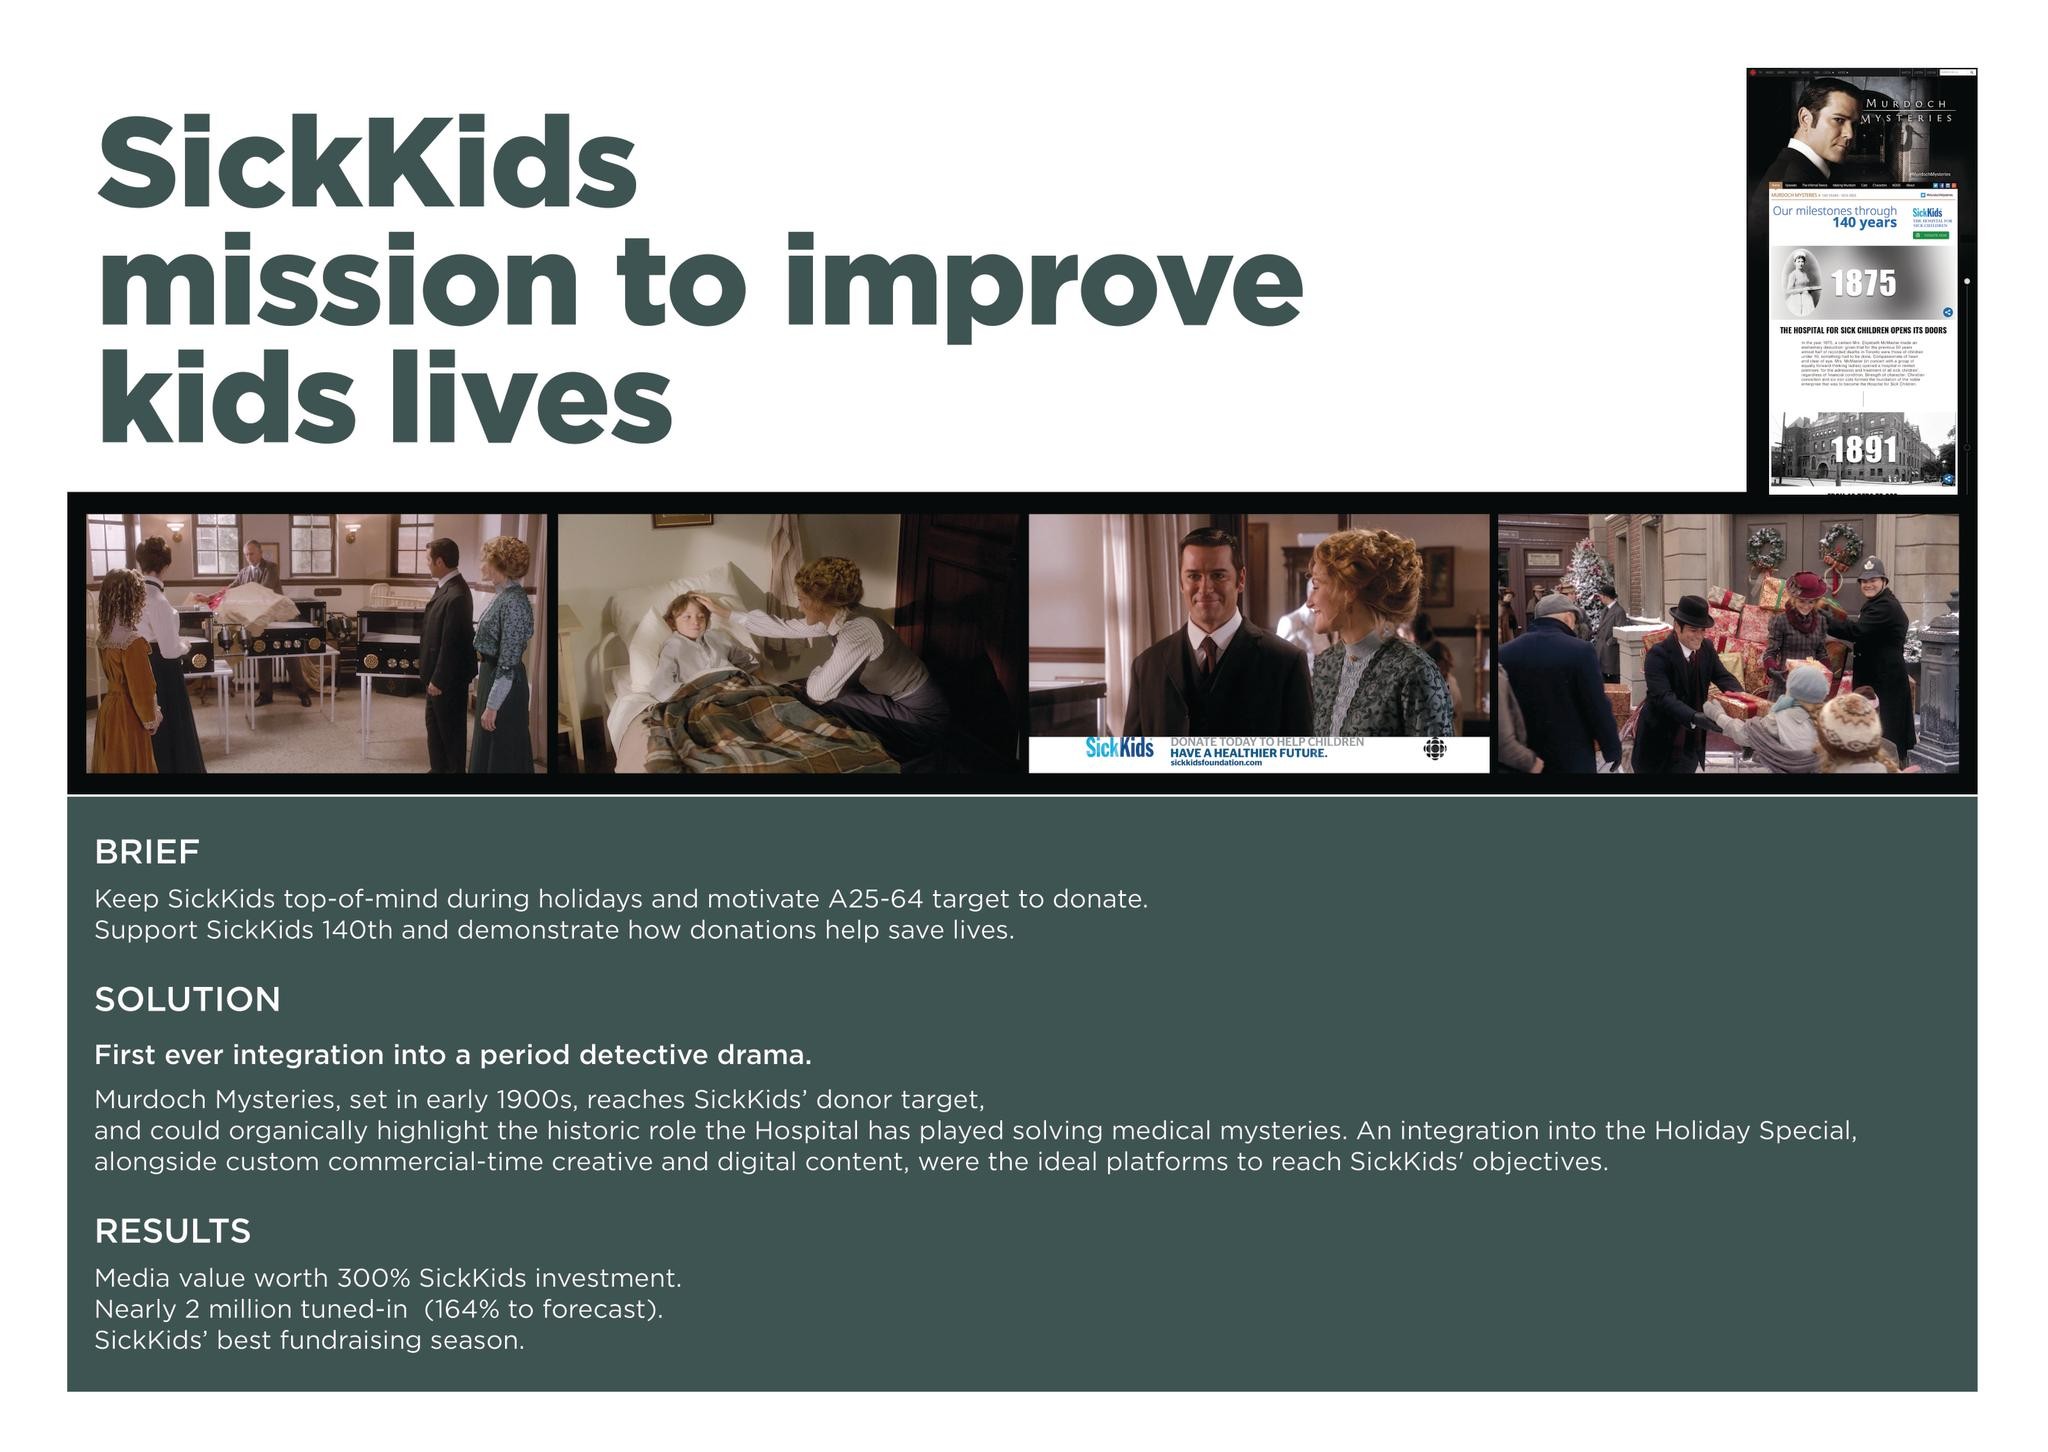 SickKids Foundation/Murdoch Mysteries Programme Integration